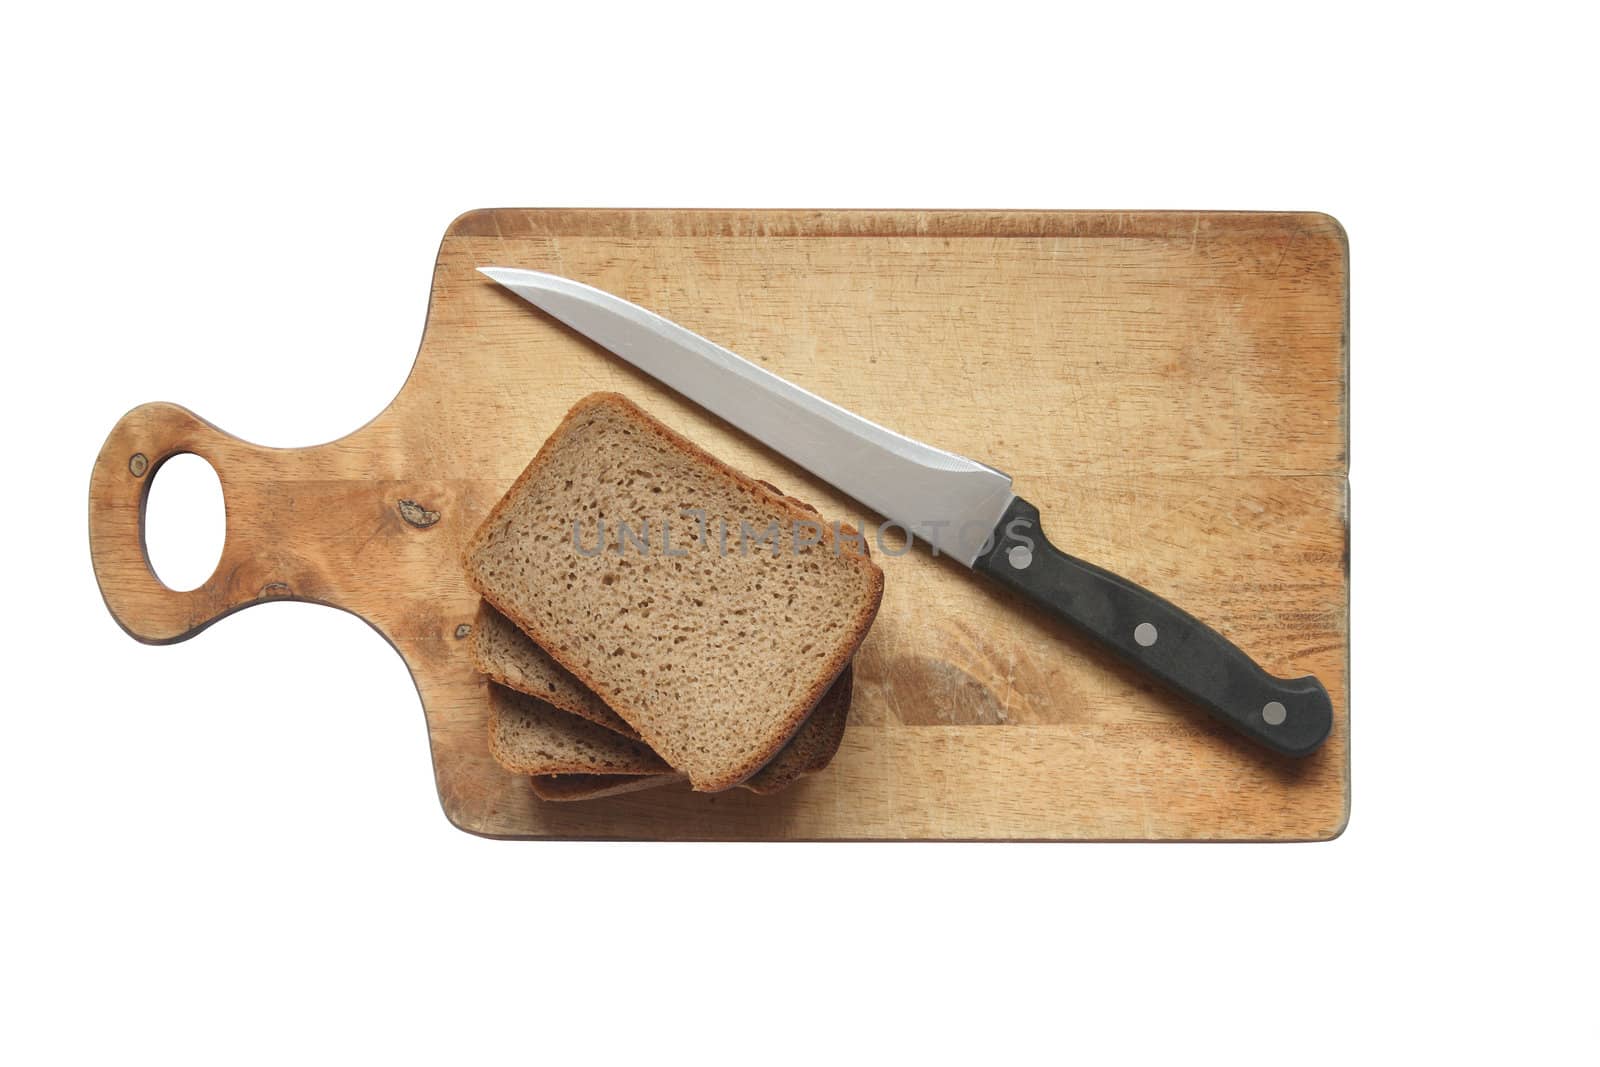 Sliced Bread by kvkirillov